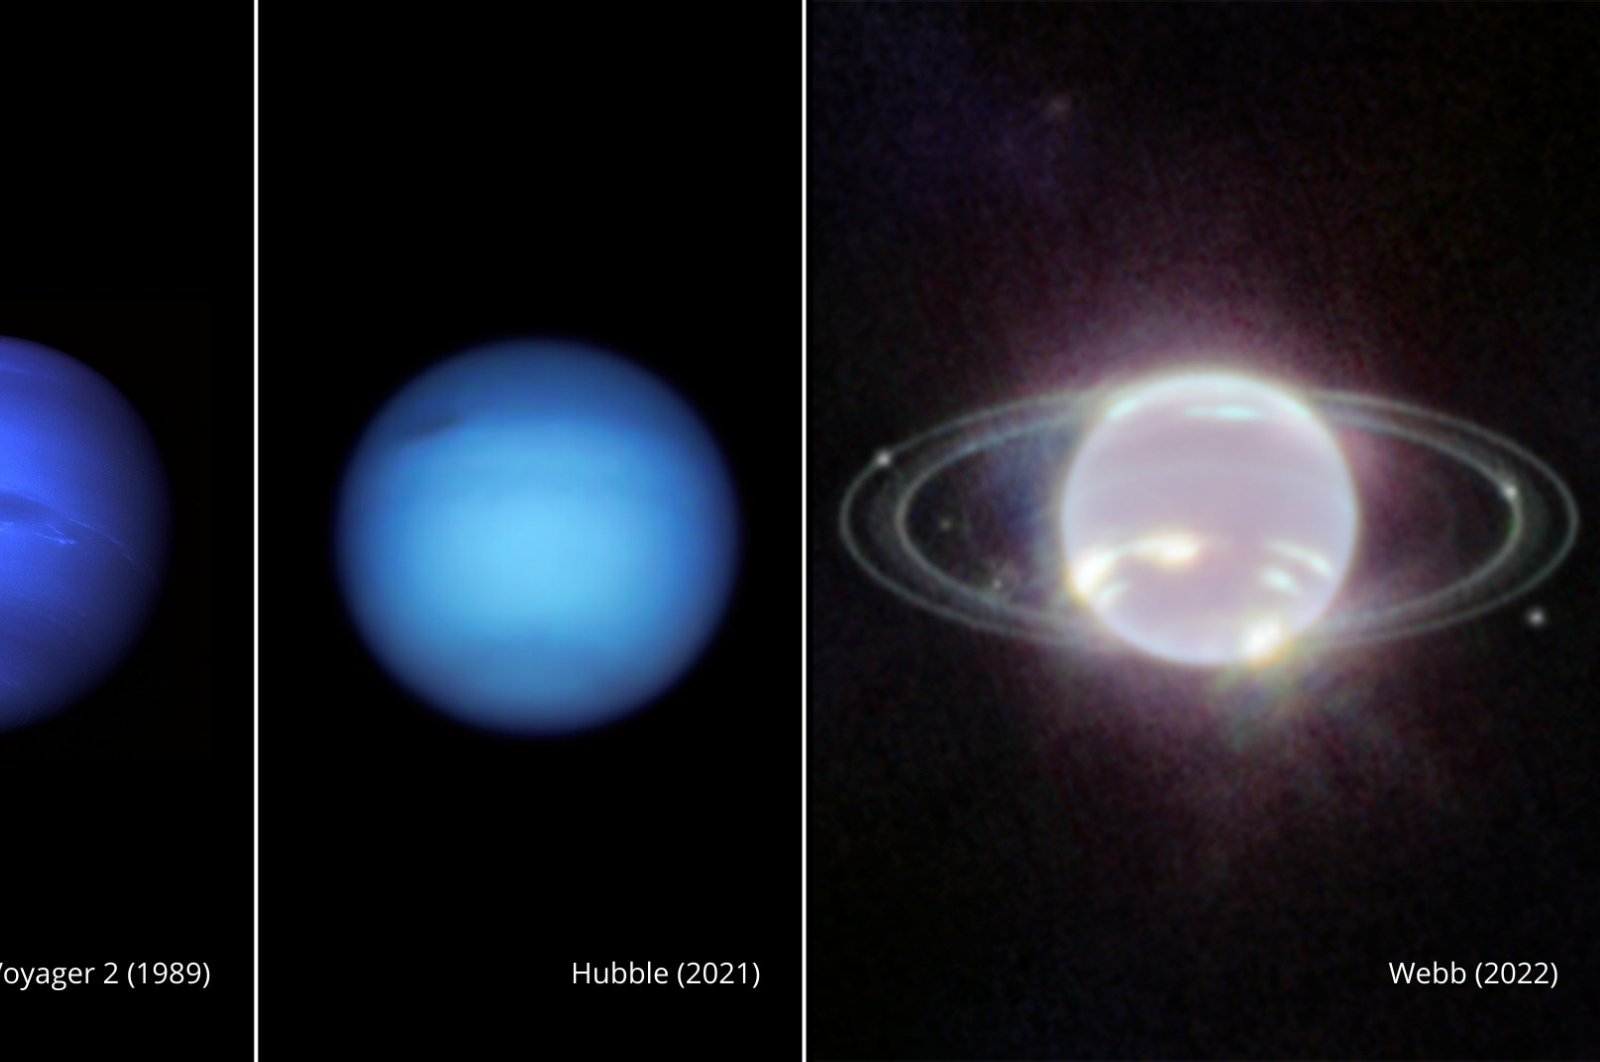 Webb maakt prachtige beelden van Neptunus en zijn delicate ringen